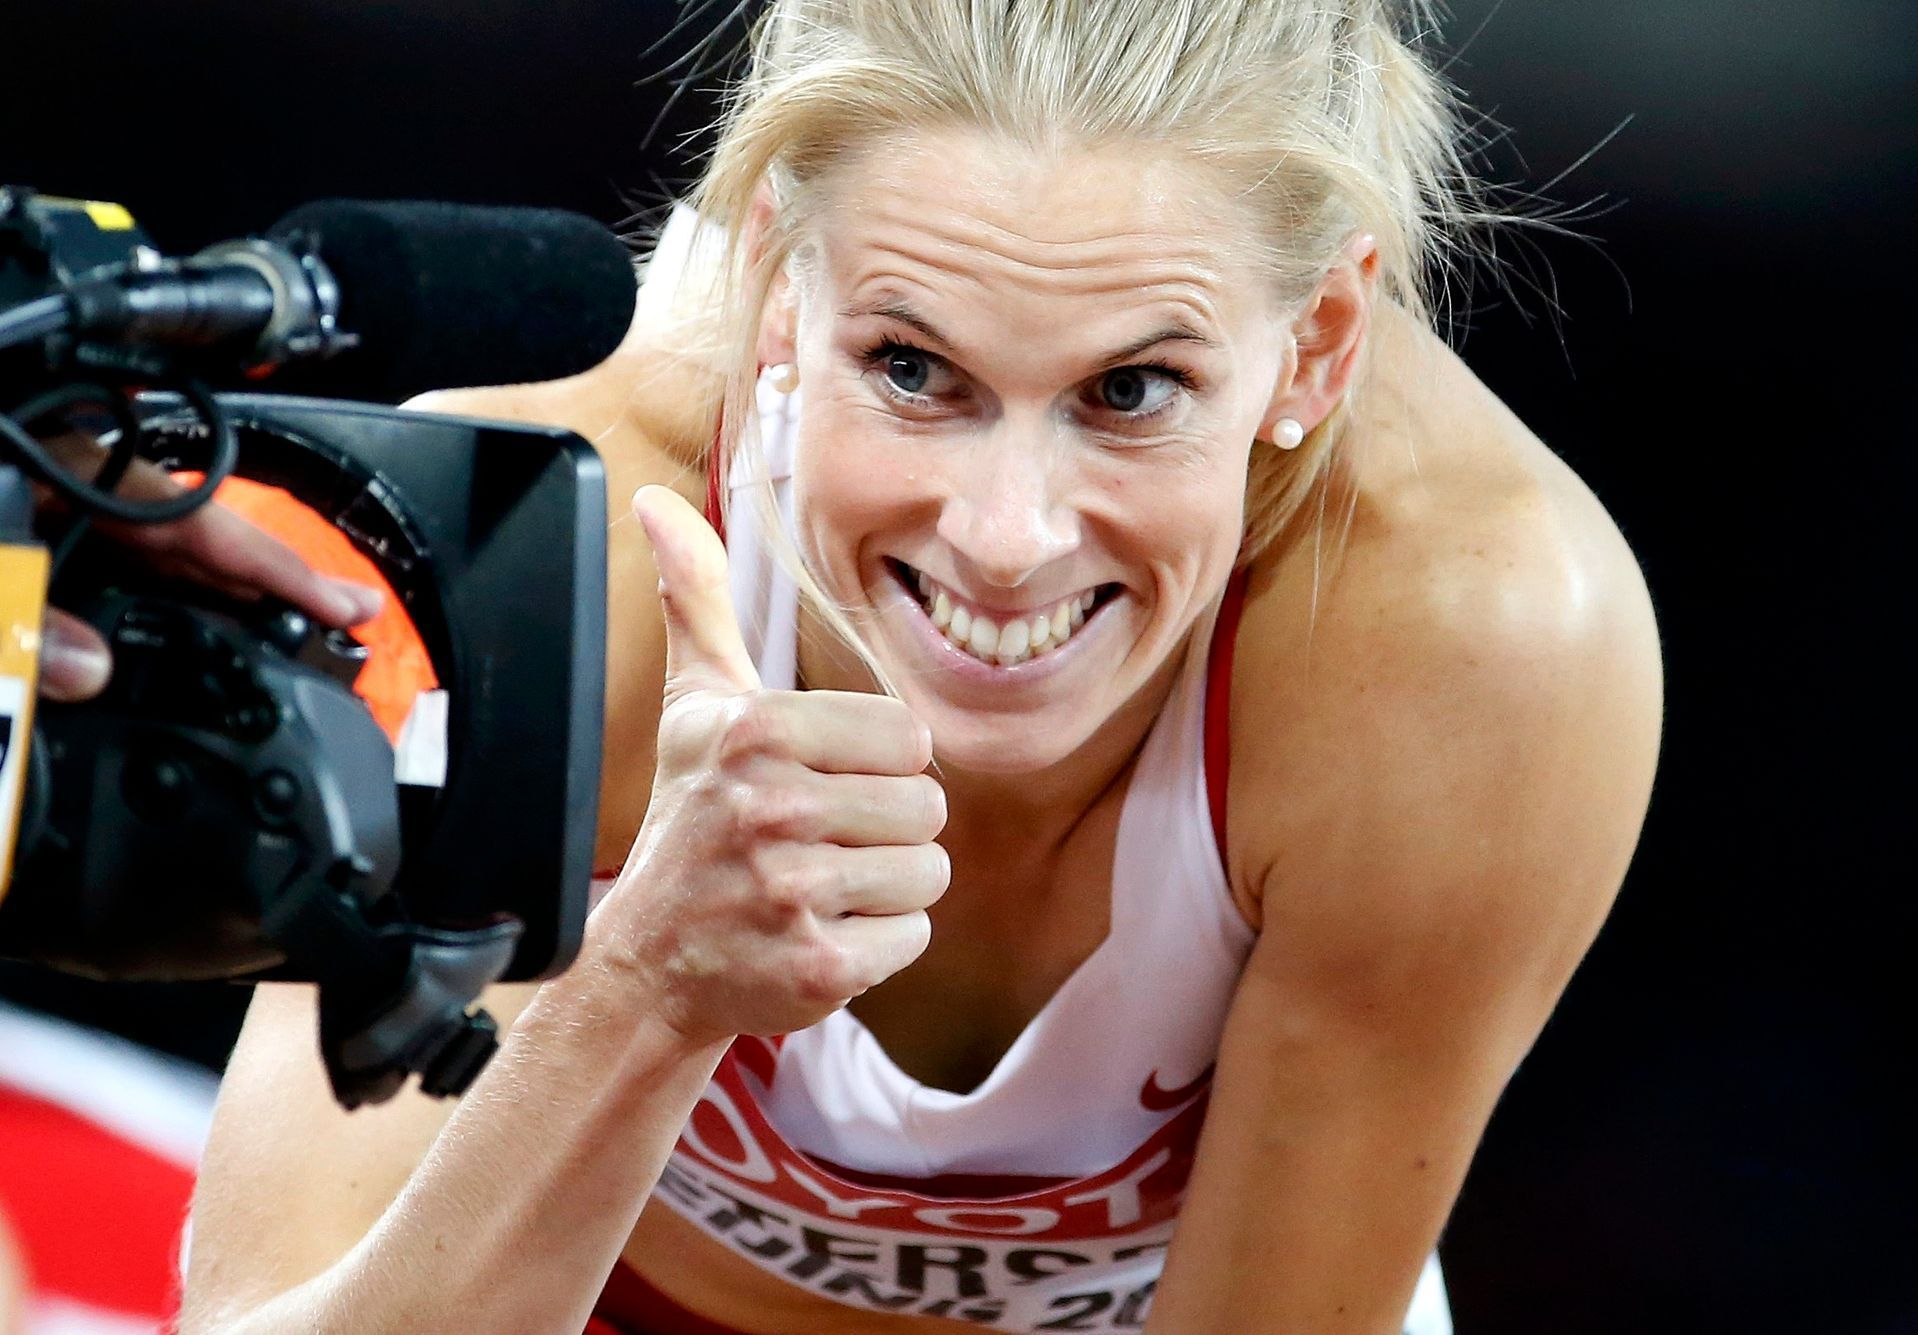 MS v atletice 2015, 400 m př. Ž:: Slott Petersenová